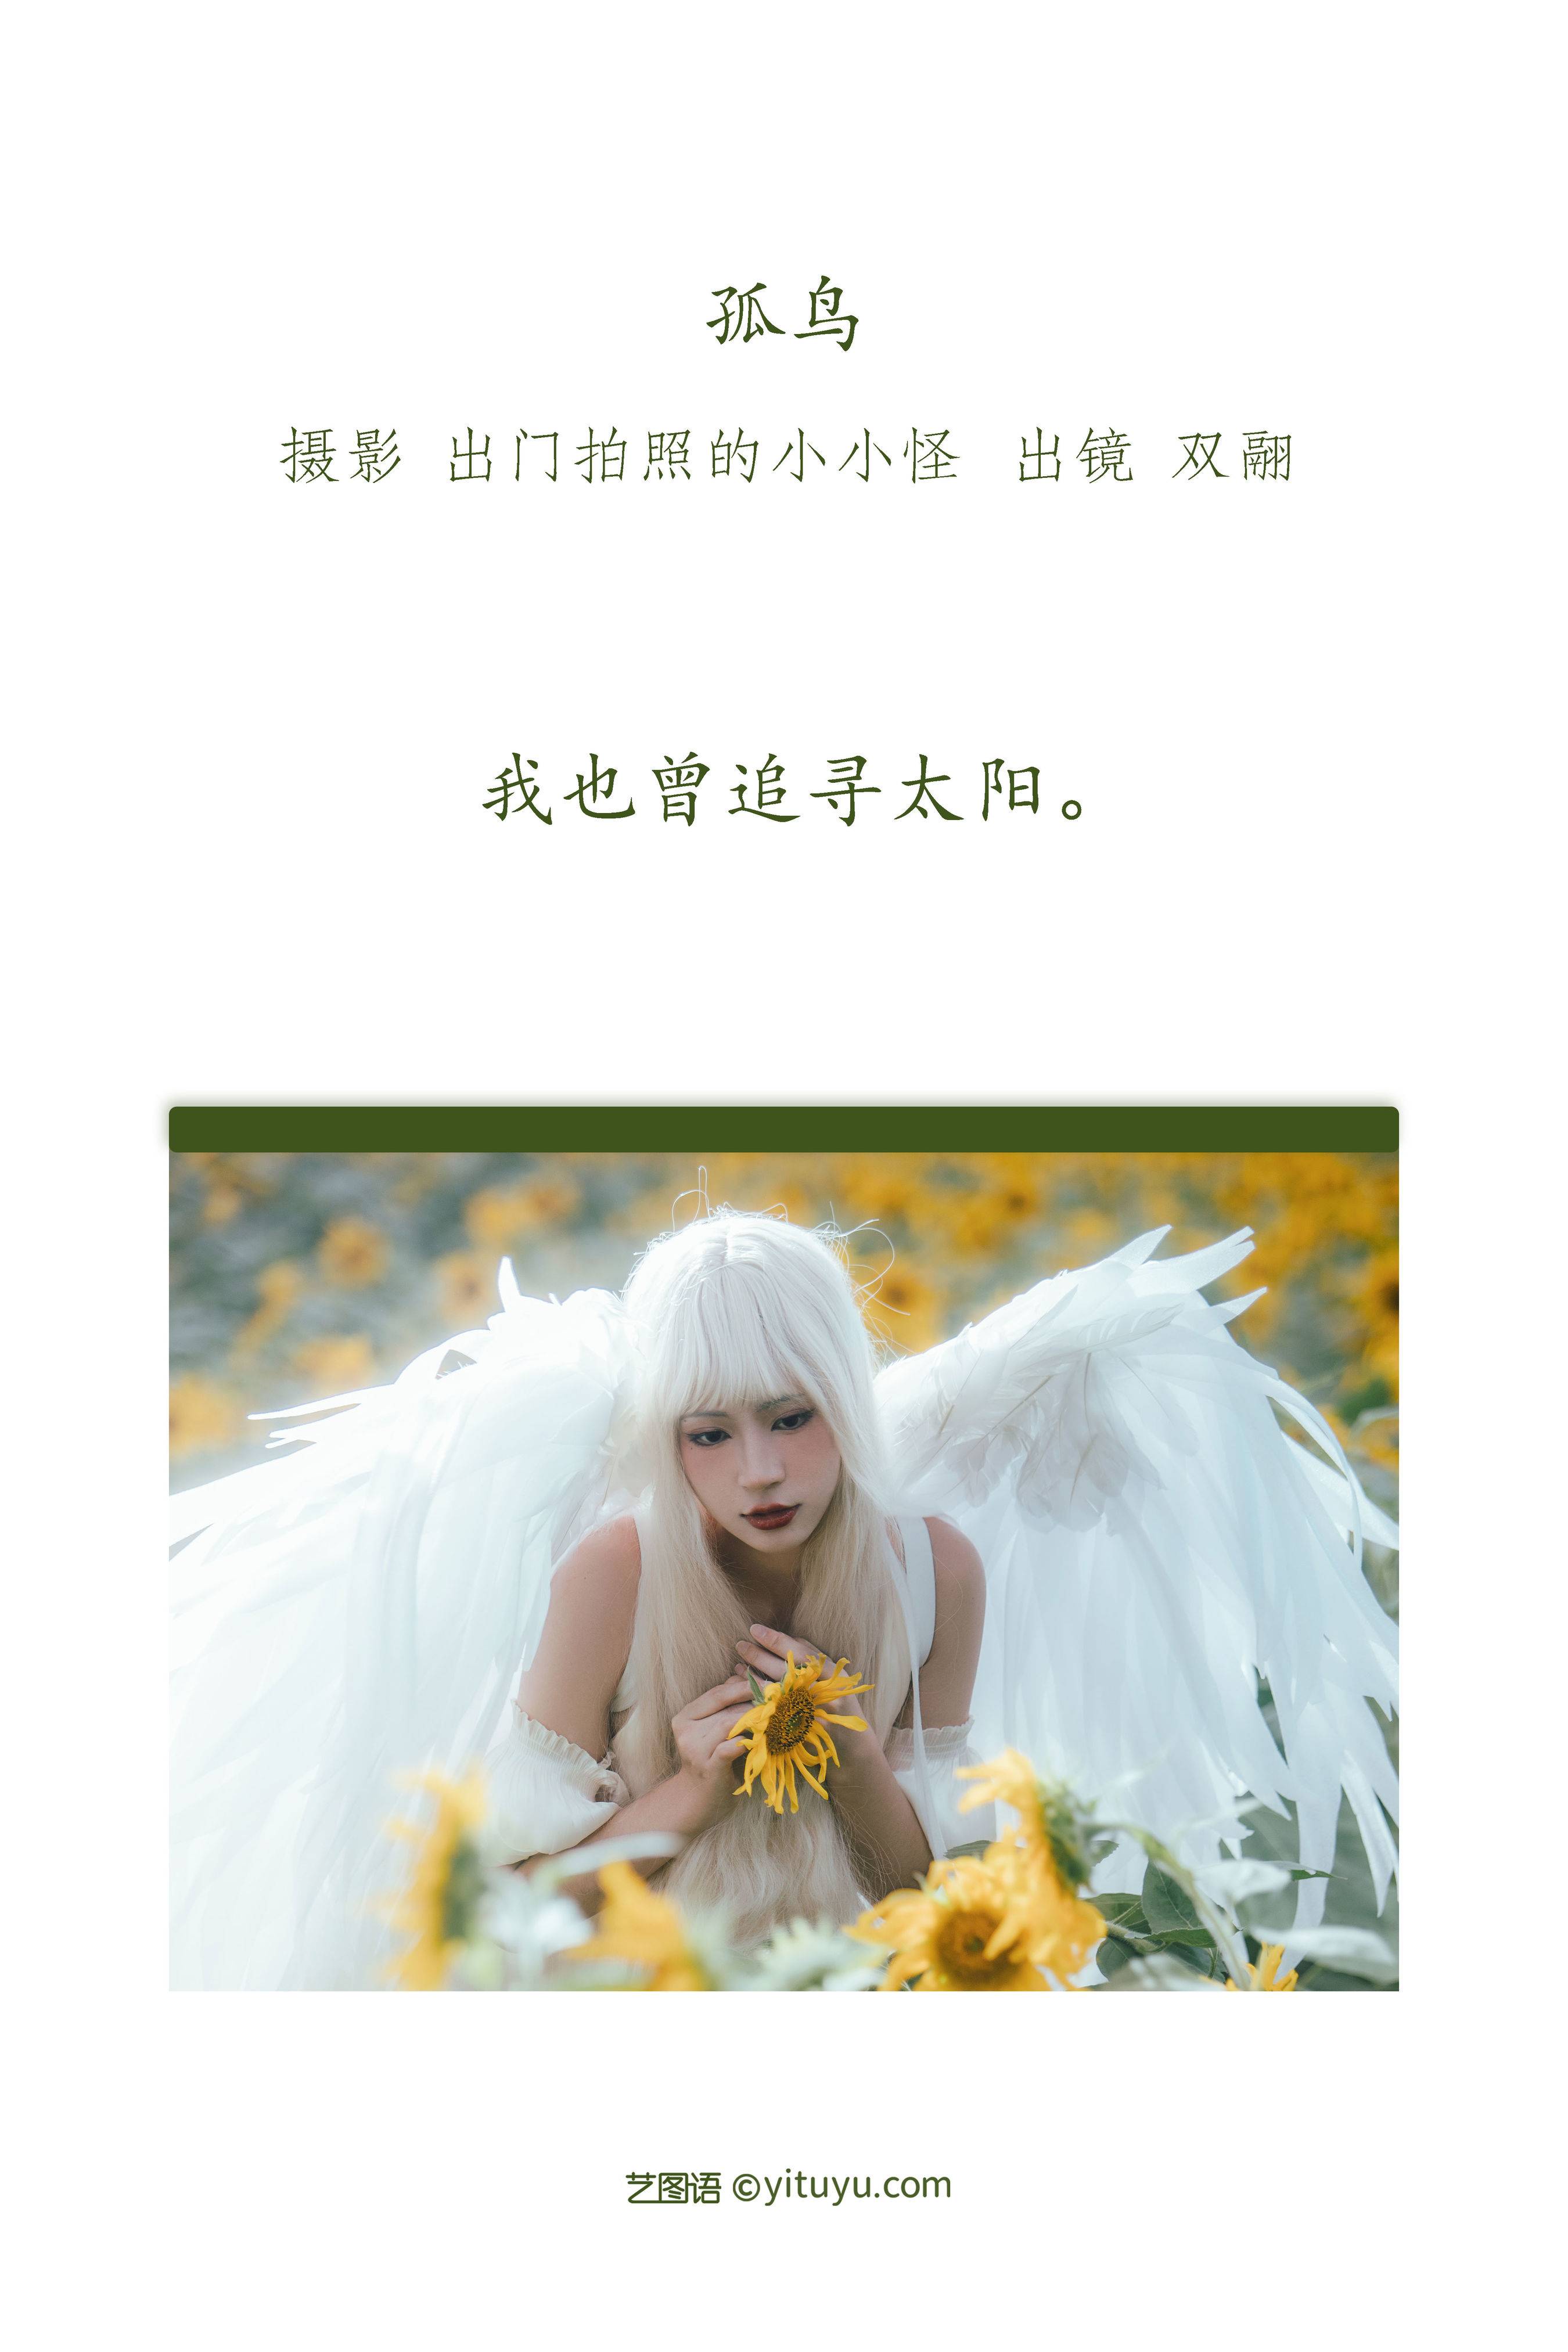 孤鸟 非主流 向日葵 天使 个人写真&YiTuYu艺图语-1